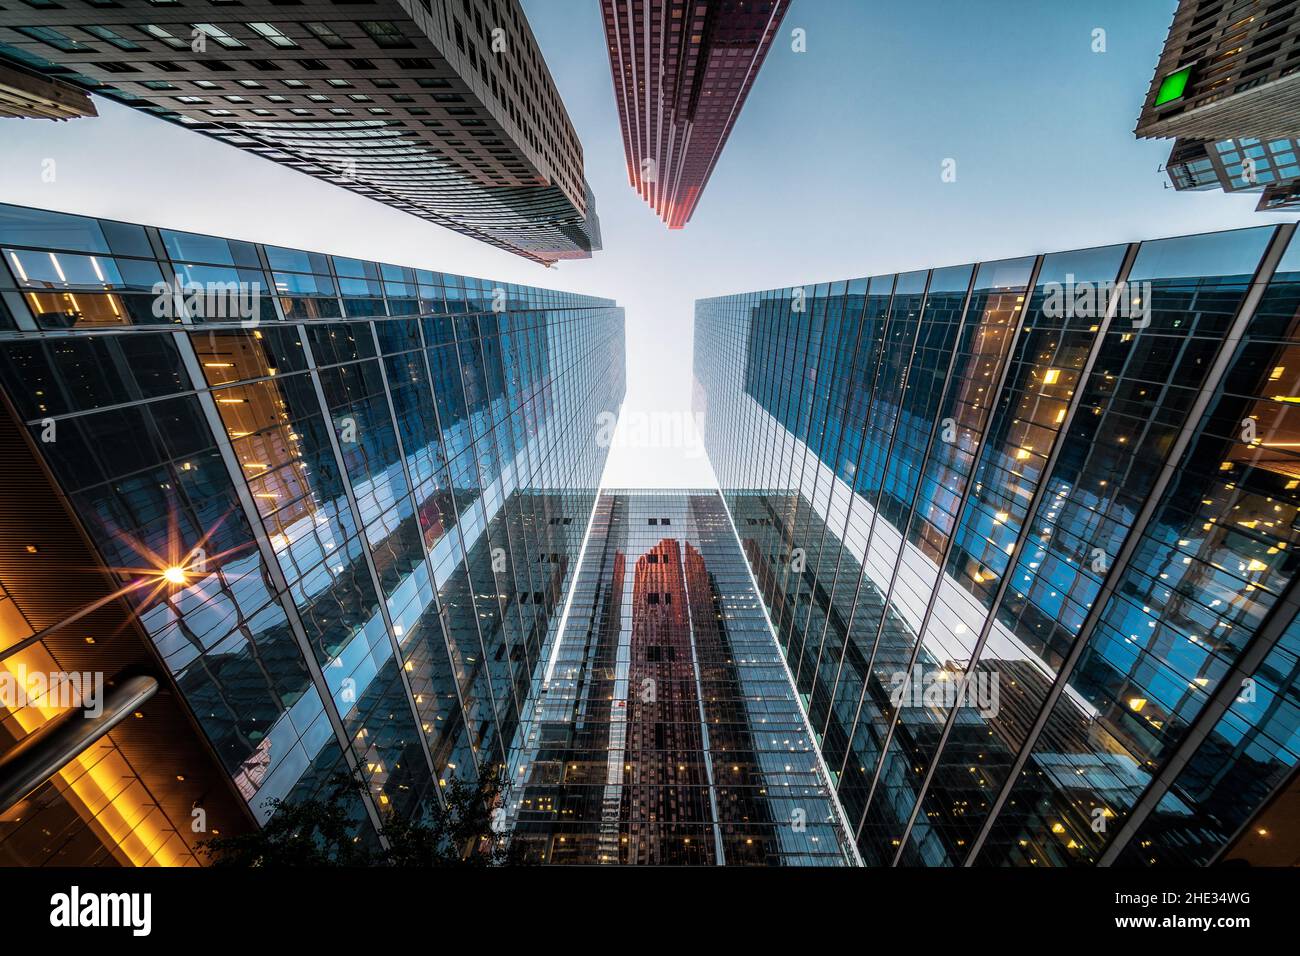 Concepto de negocios y finanzas, mirando la arquitectura de edificios de oficinas de gran altura al atardecer en el distrito financiero de una metrópolis moderna. Foto de stock